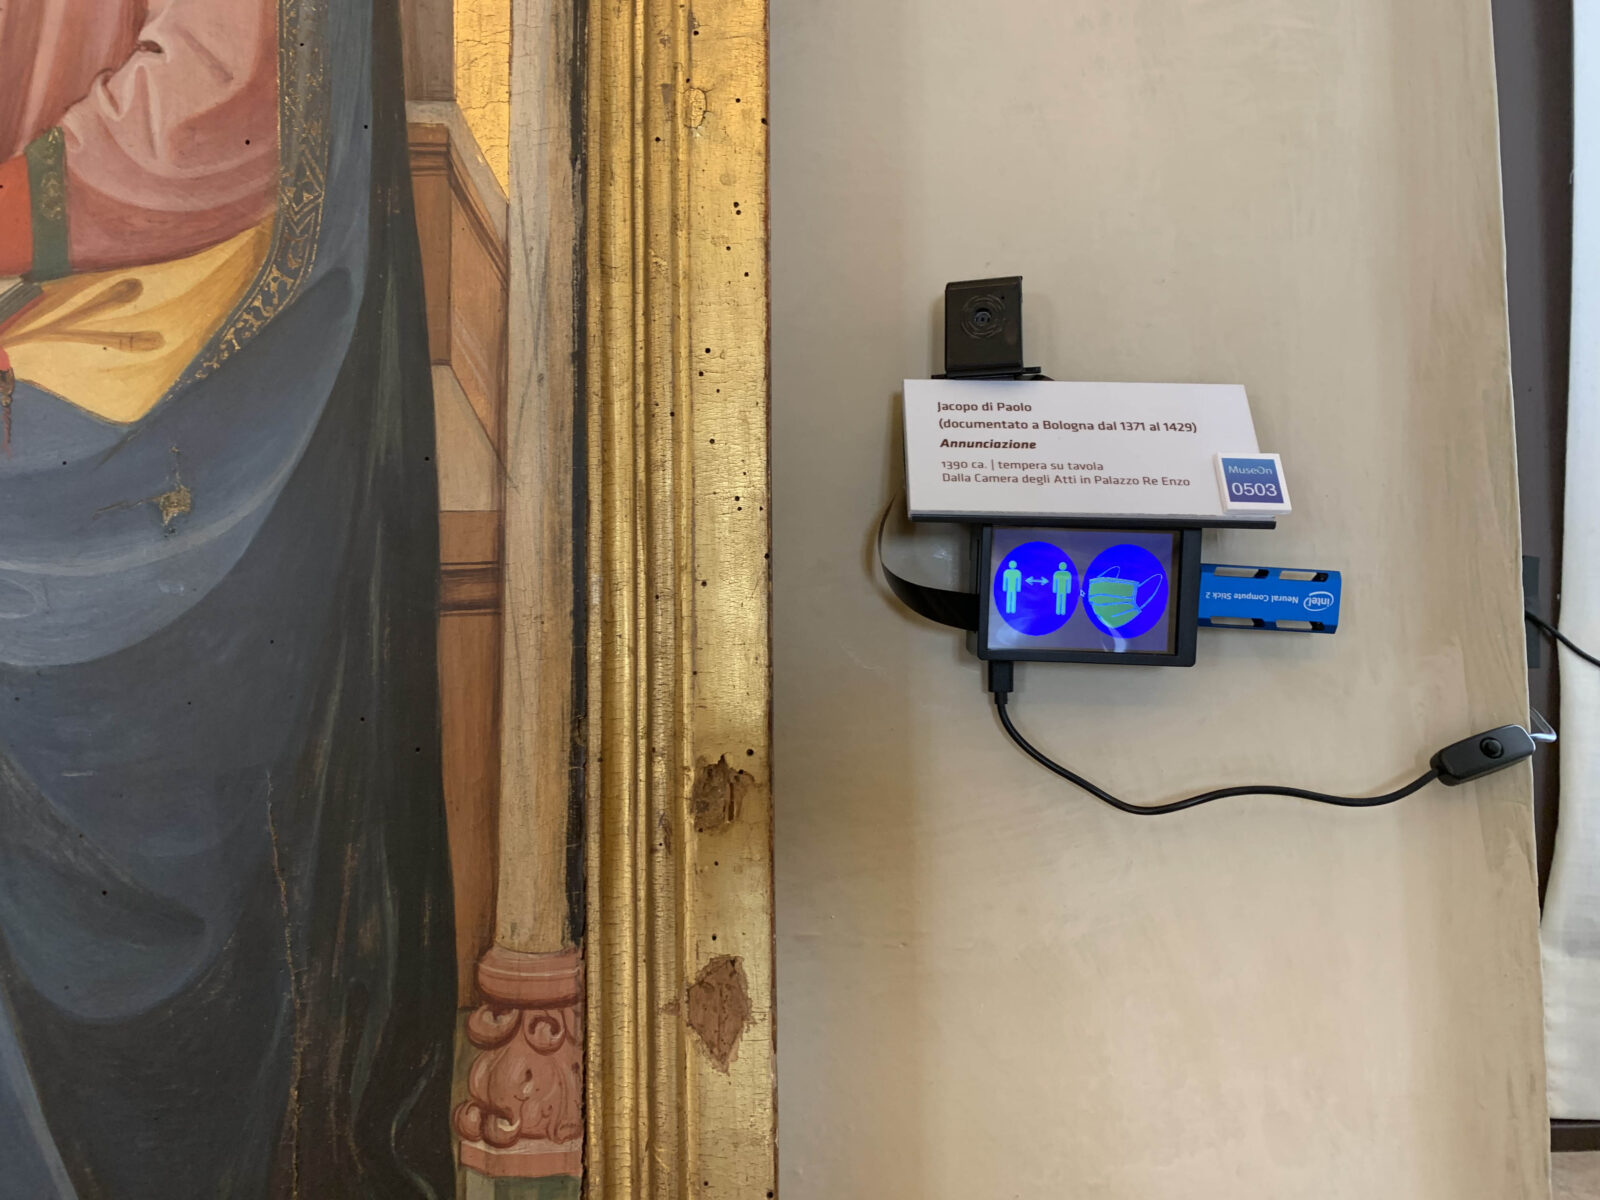 Beni culturali, a Bologna i Big Data per monitorare la fruizione delle opere d’arte